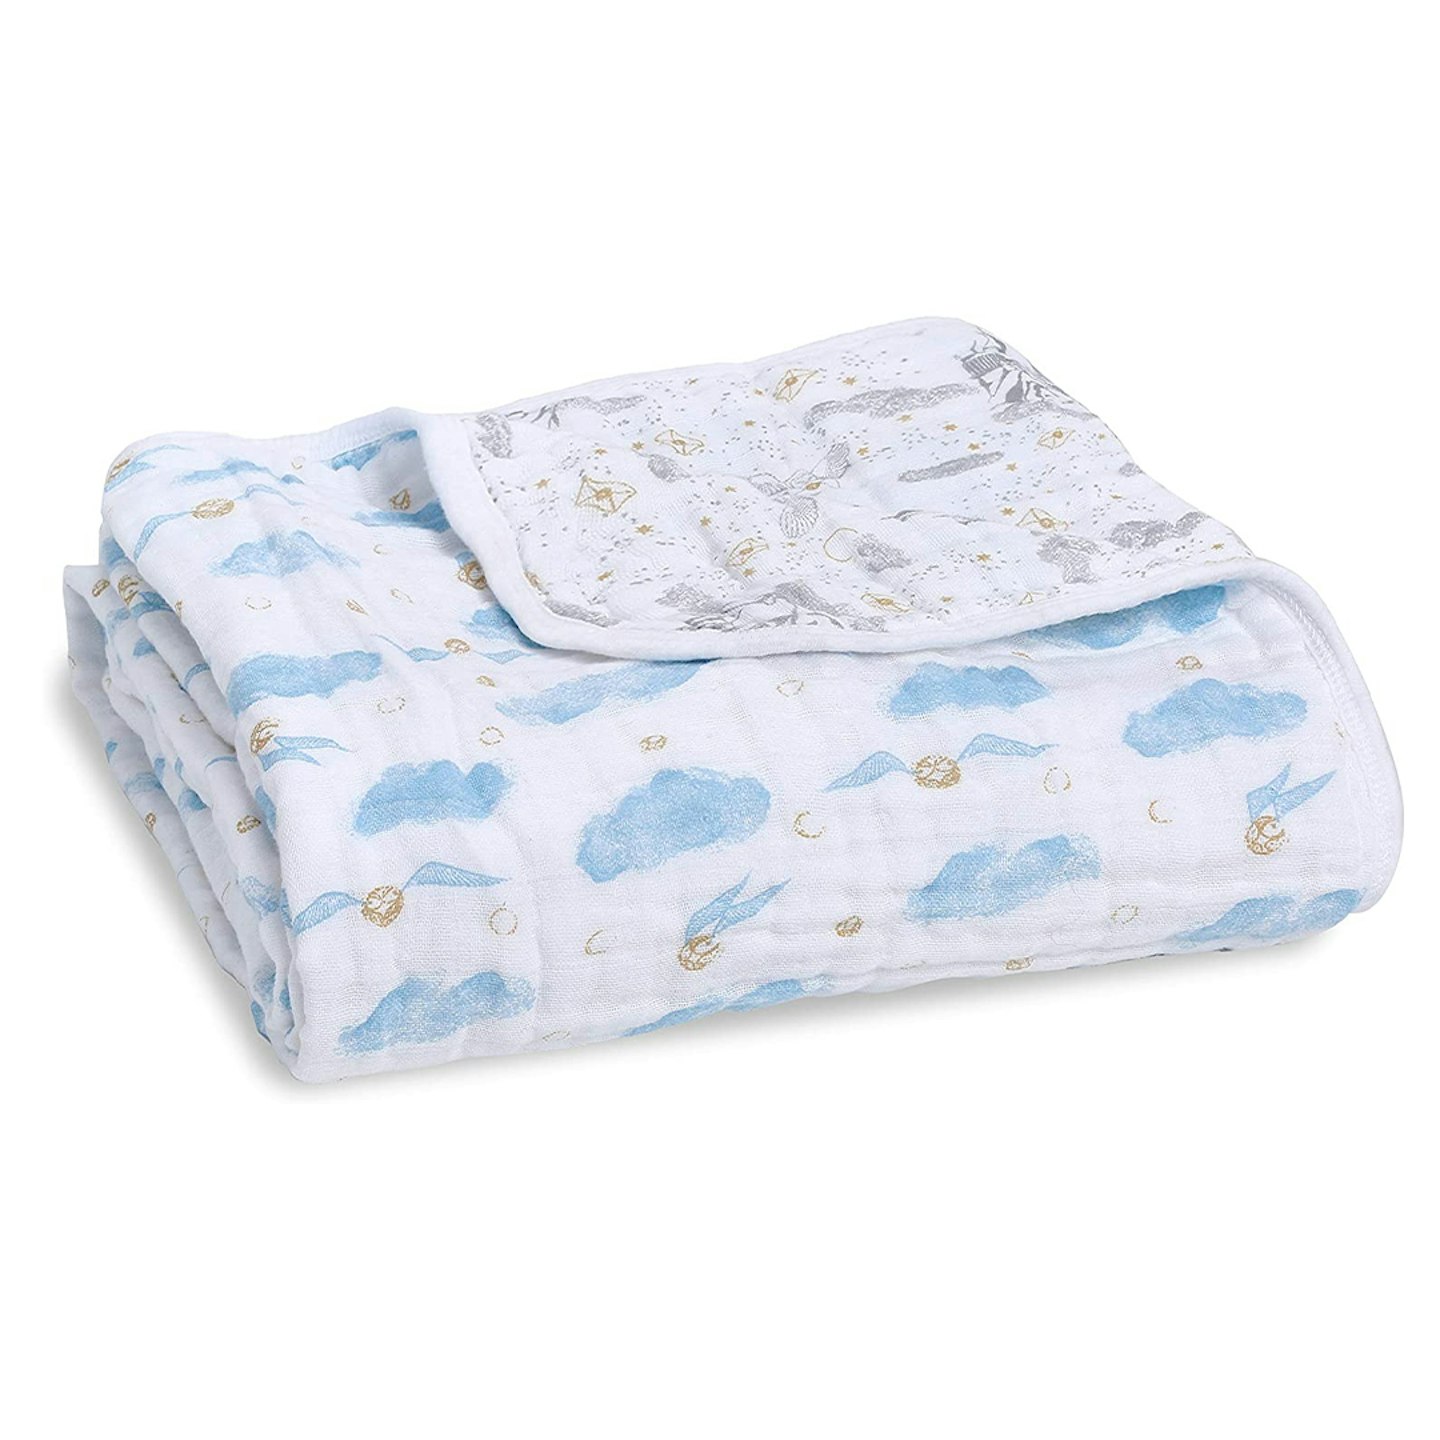 aden + anais Dream Baby Blanket